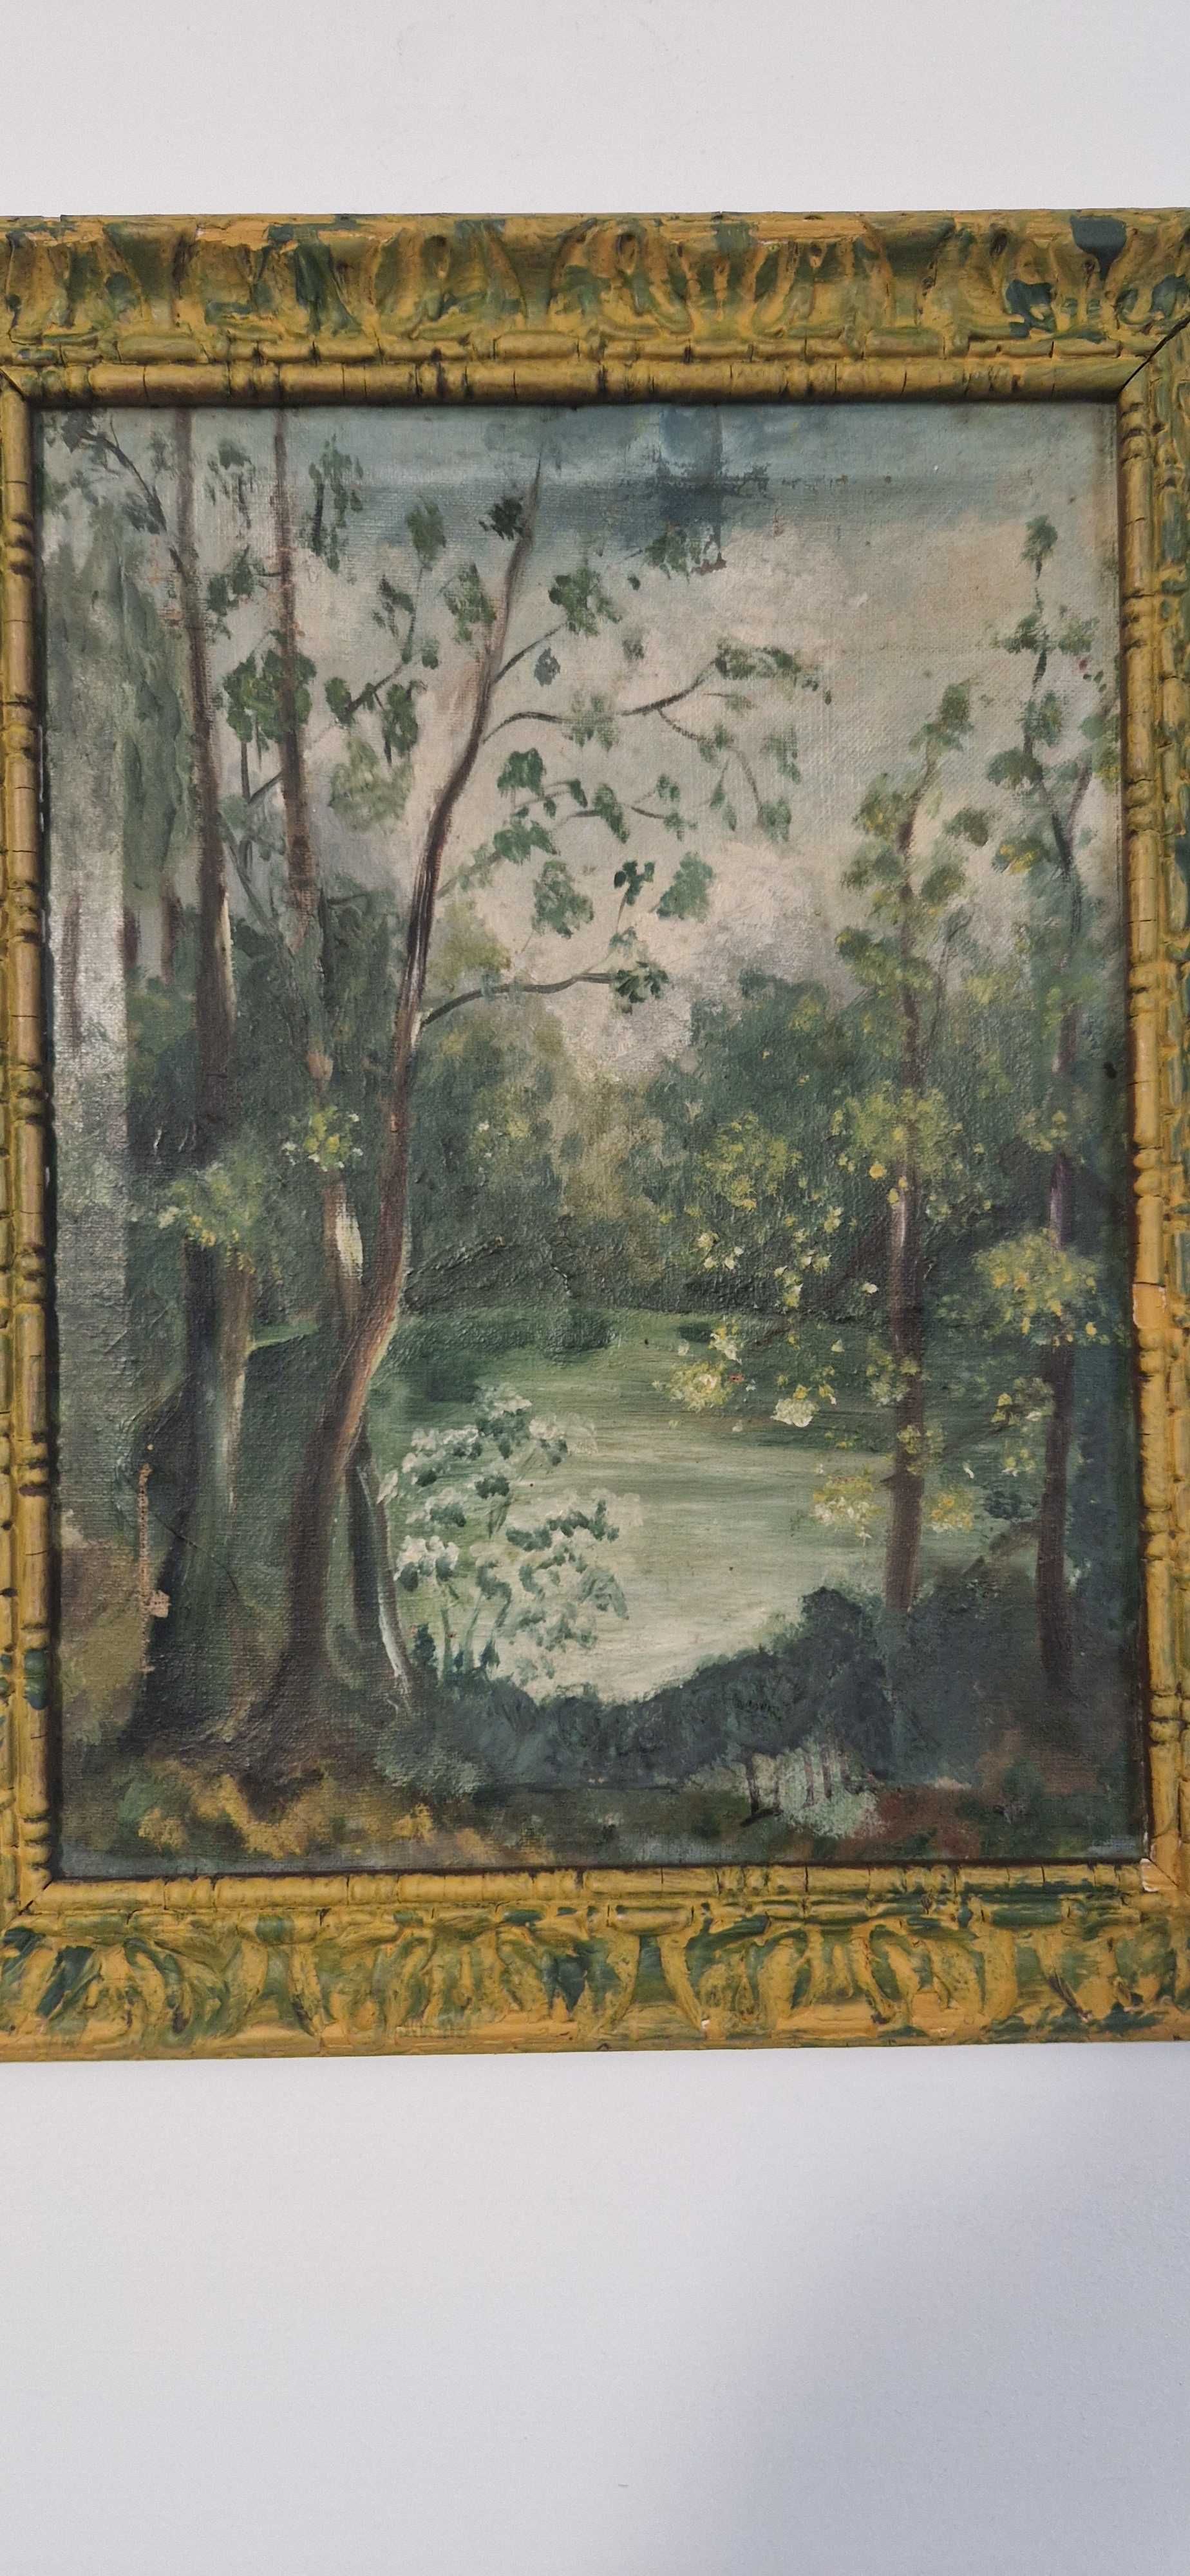 Stary obraz zielony pejzaz pt. Jezioro w lesie sygnowany antyk